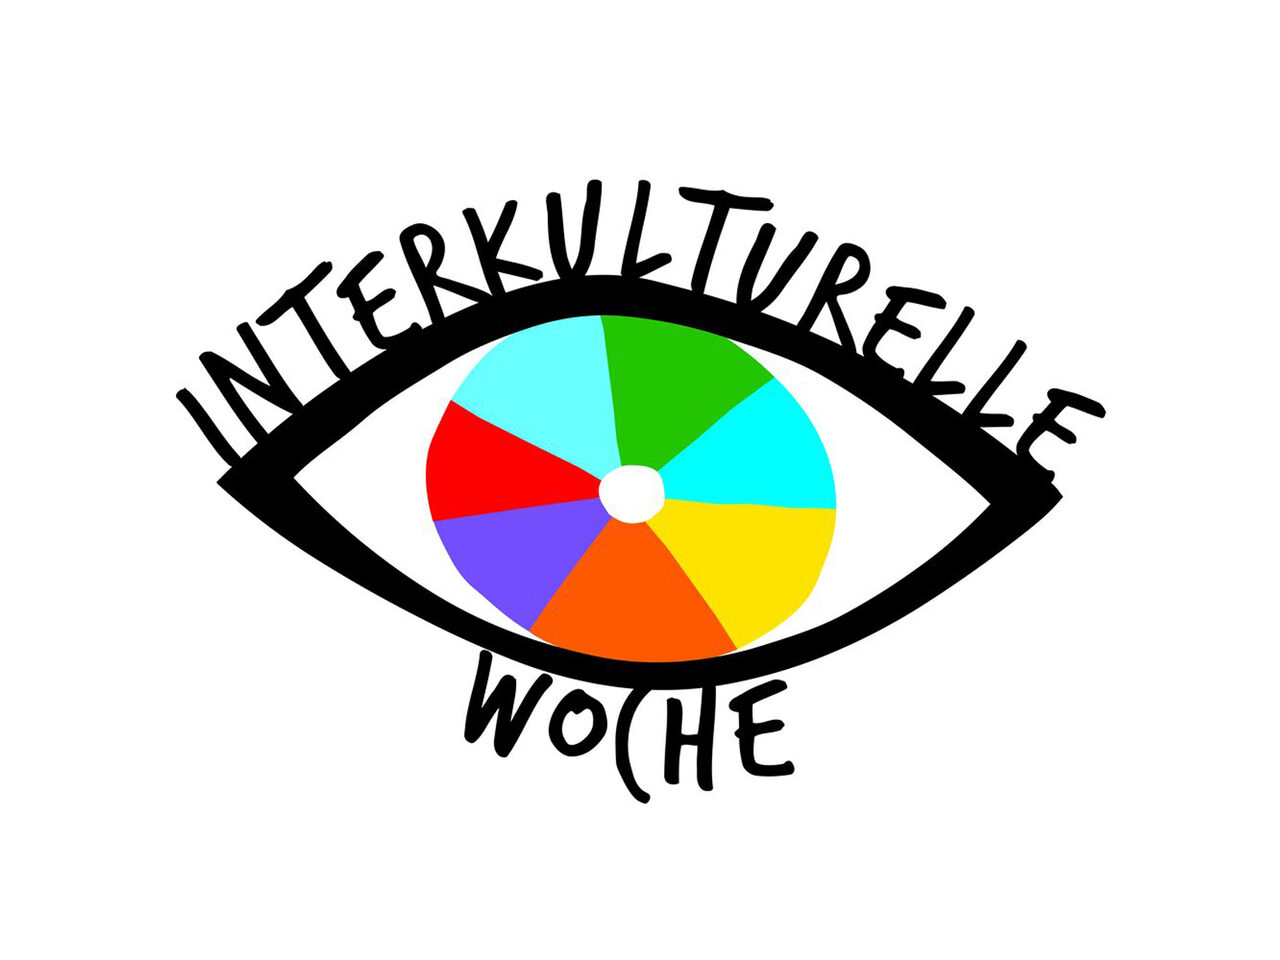 Augen-Grafik mit einer bunten Iris und schwarzem Schriftzug mit "Interkulturelle Woche"